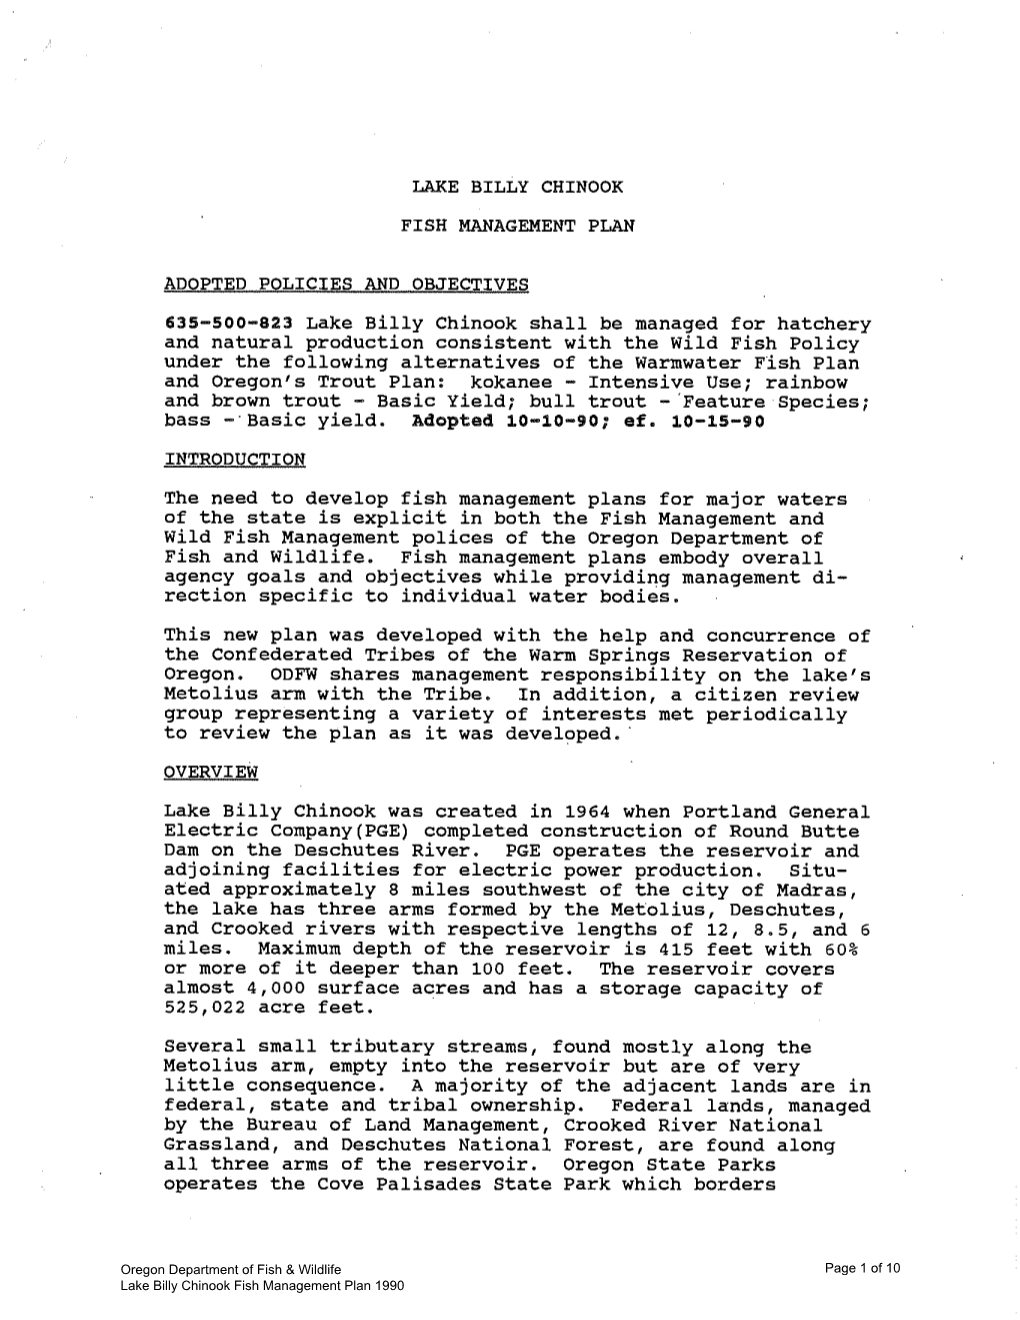 Lake Billy Chinook Fish Management Plan 1990.Pdf